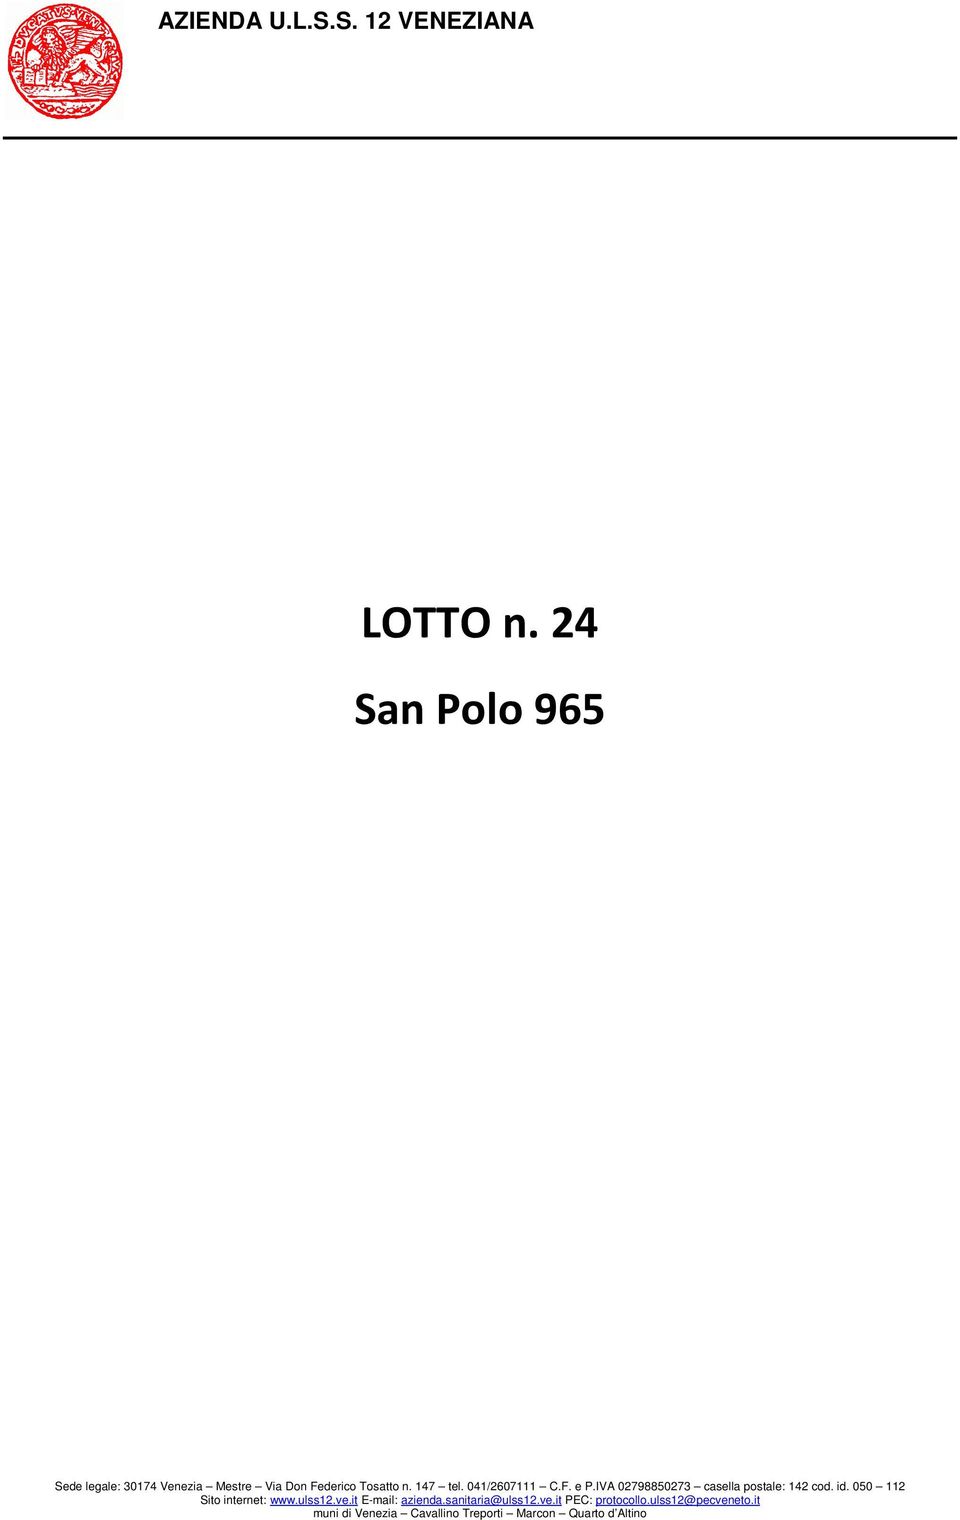 Polo 965